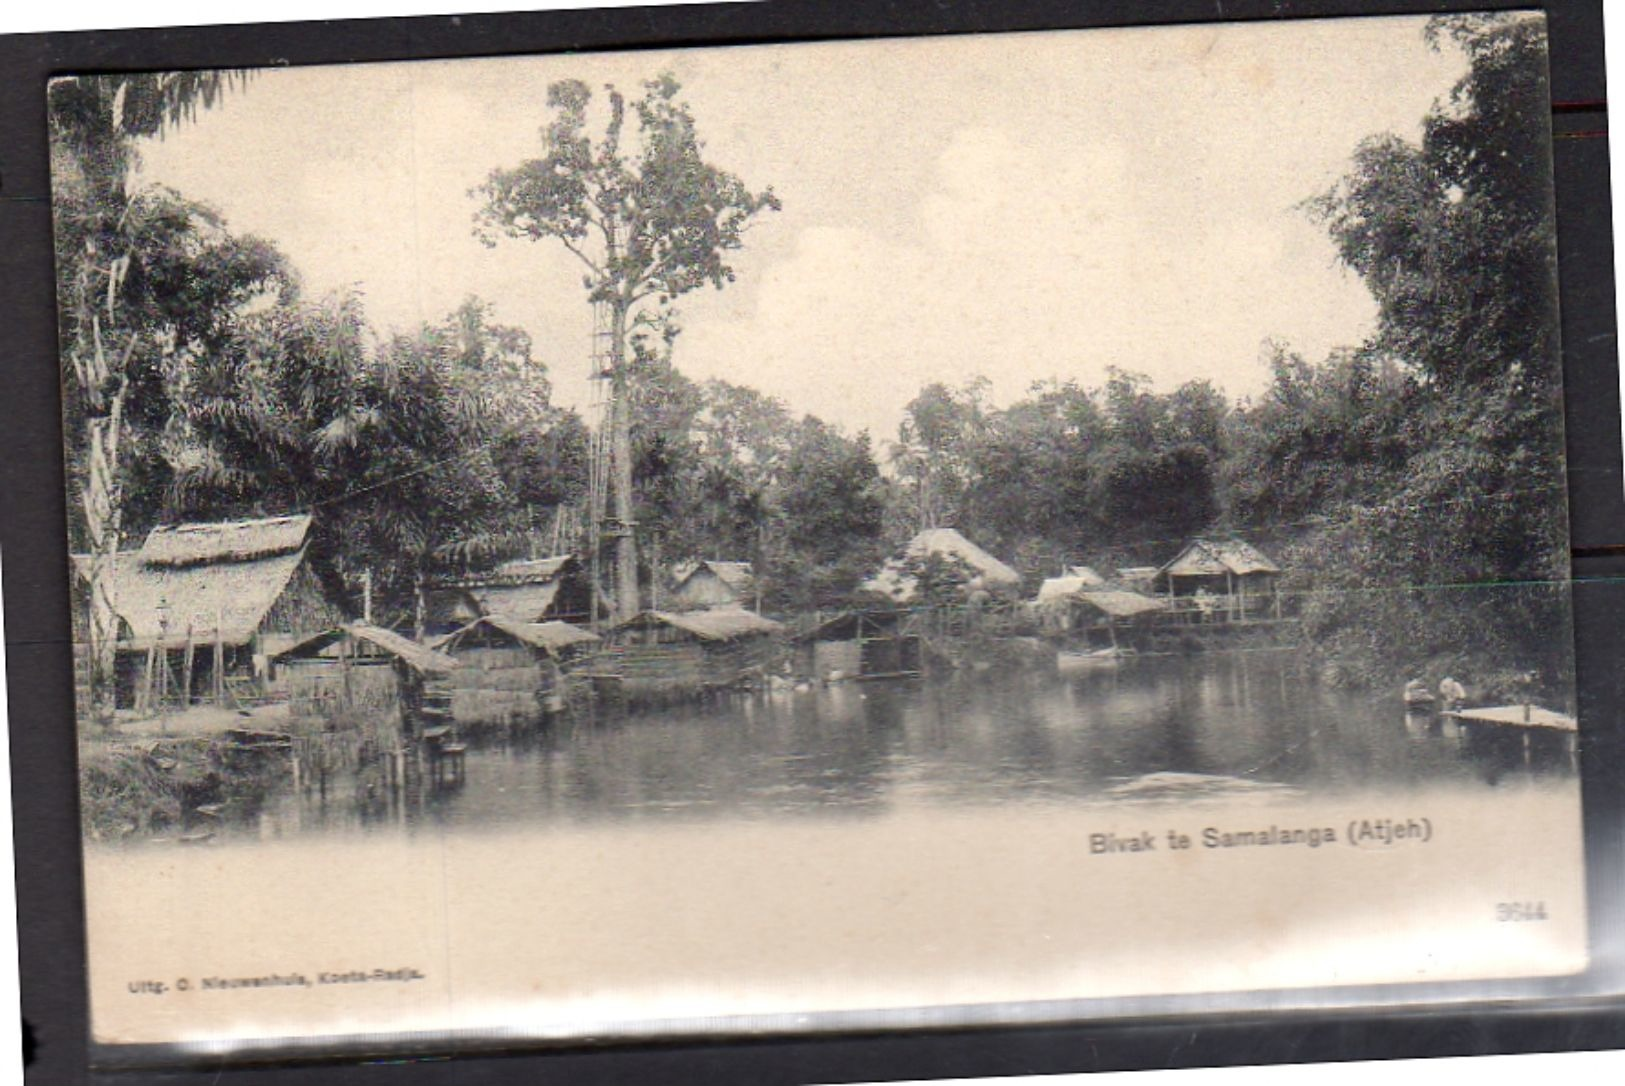 Netherlands Indies SAMALANGA (Atjeh) Bivak Scarce Card +/- 1905  (ni1-15) - Indonesia